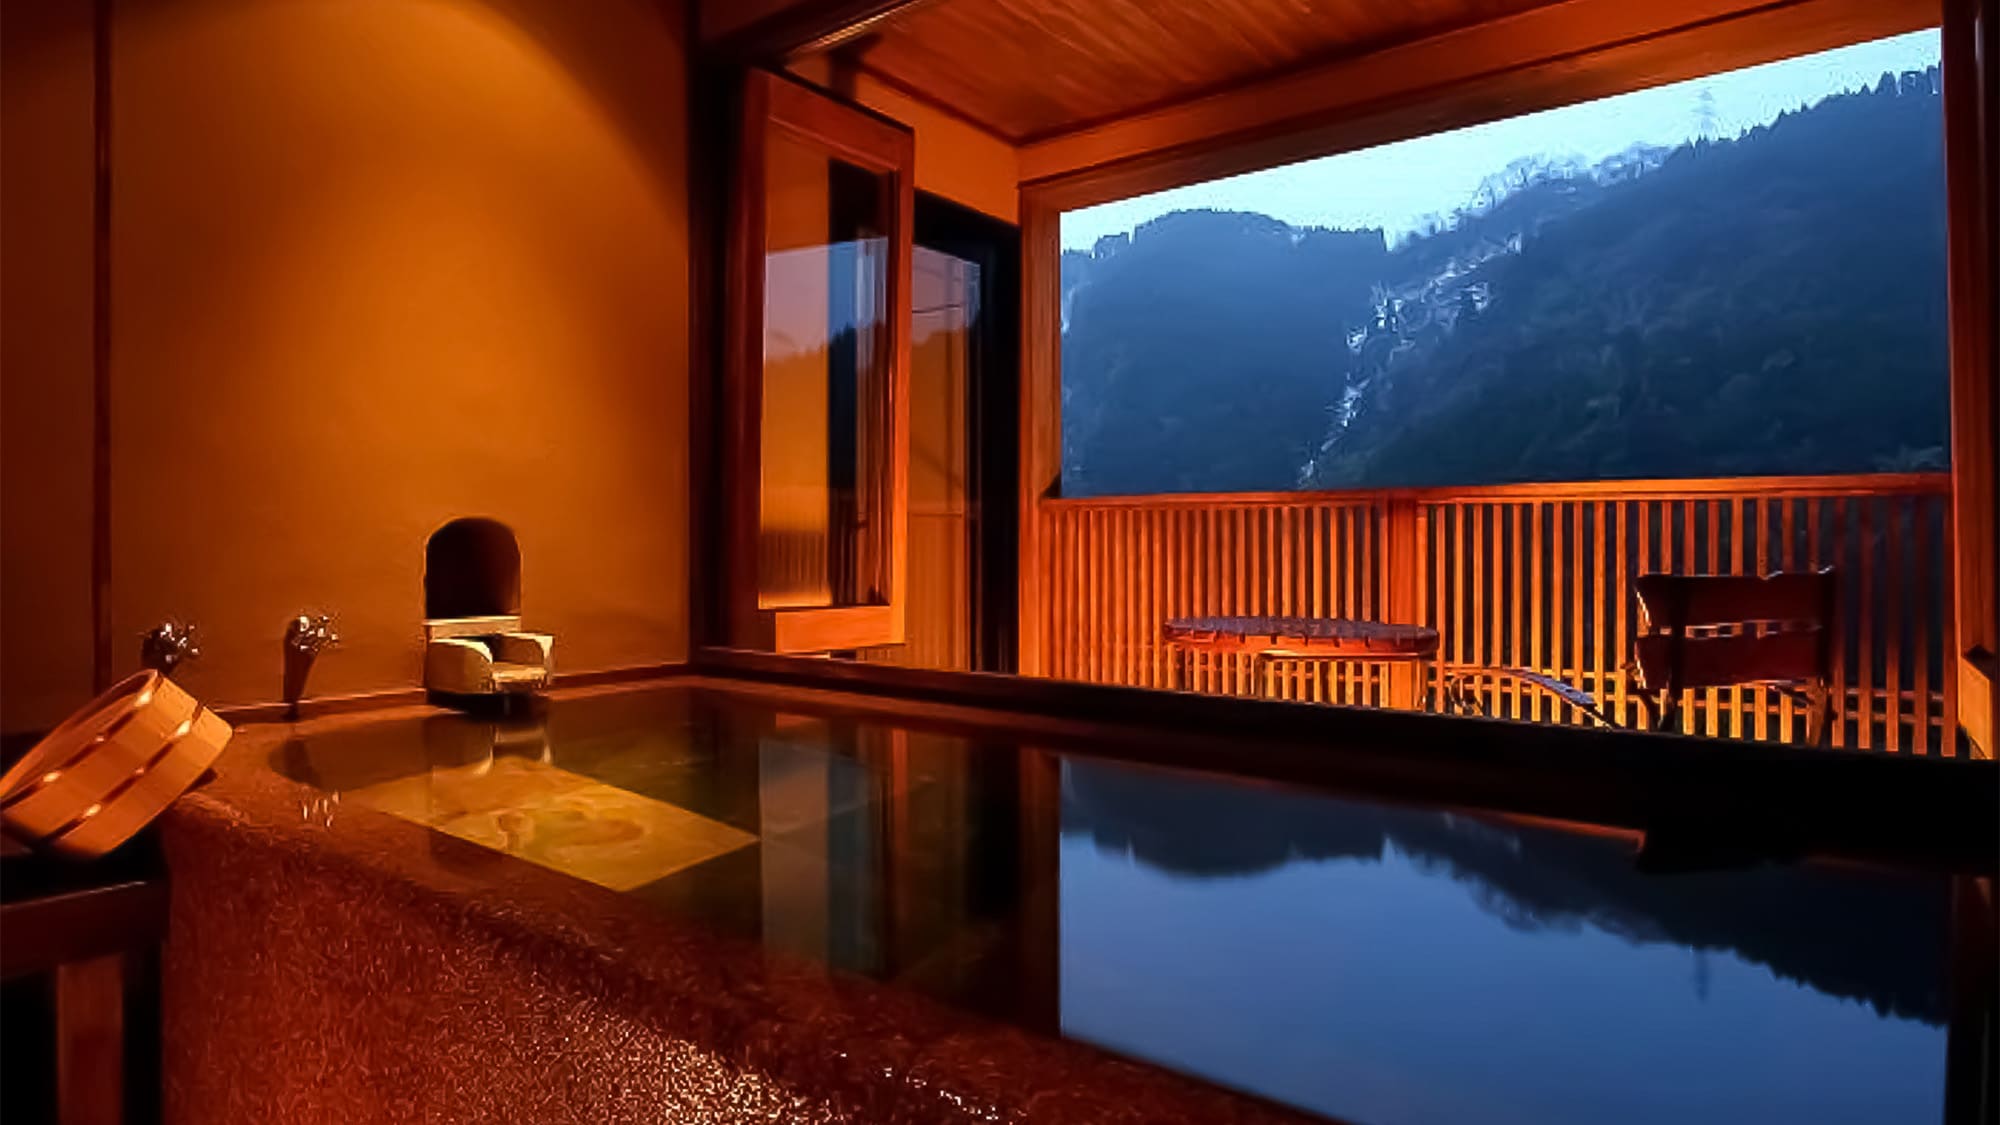 ・日式摩登房間 10張榻榻米帶半露天浴池